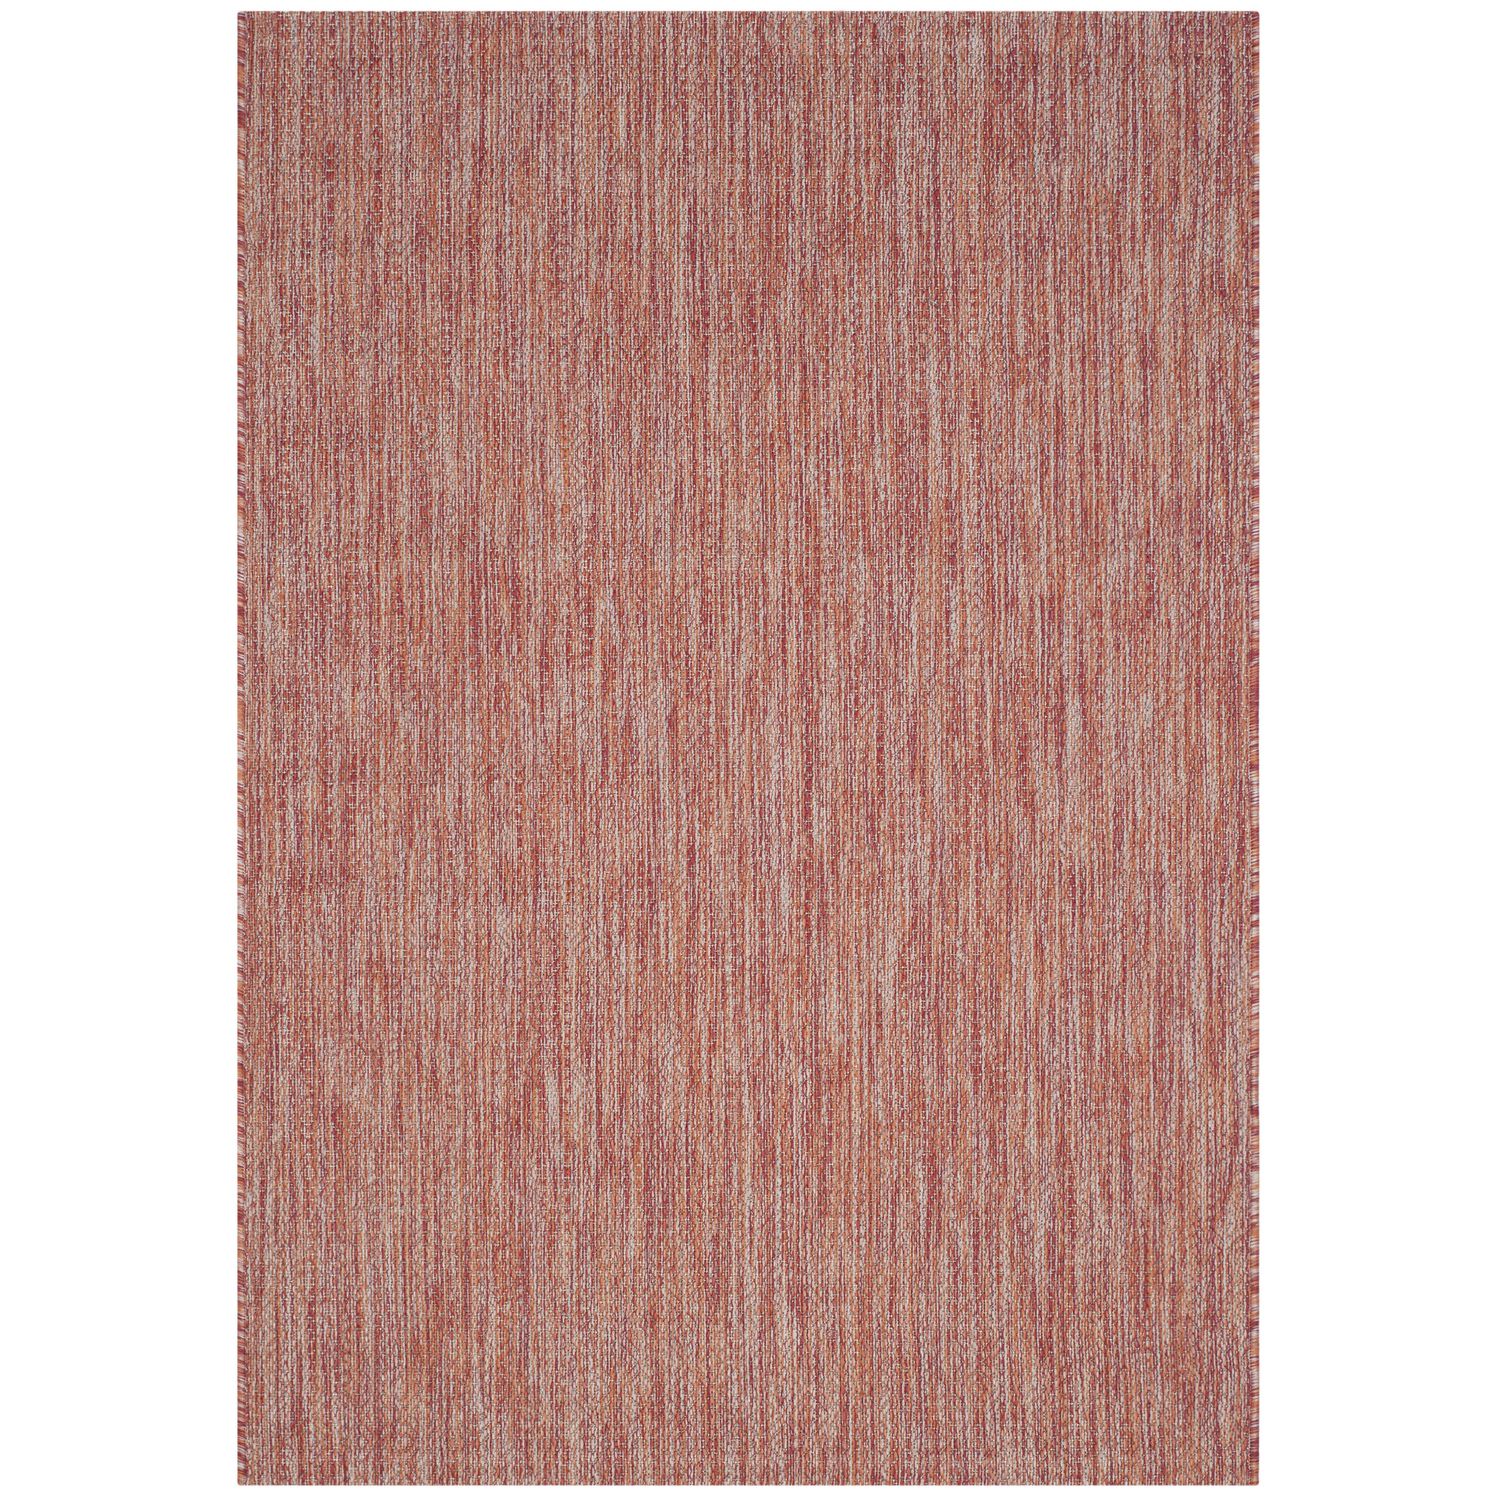 In & Outdoor Teppich Delano - Kunstfaser - Rot - 78 x 152 cm, Safavieh